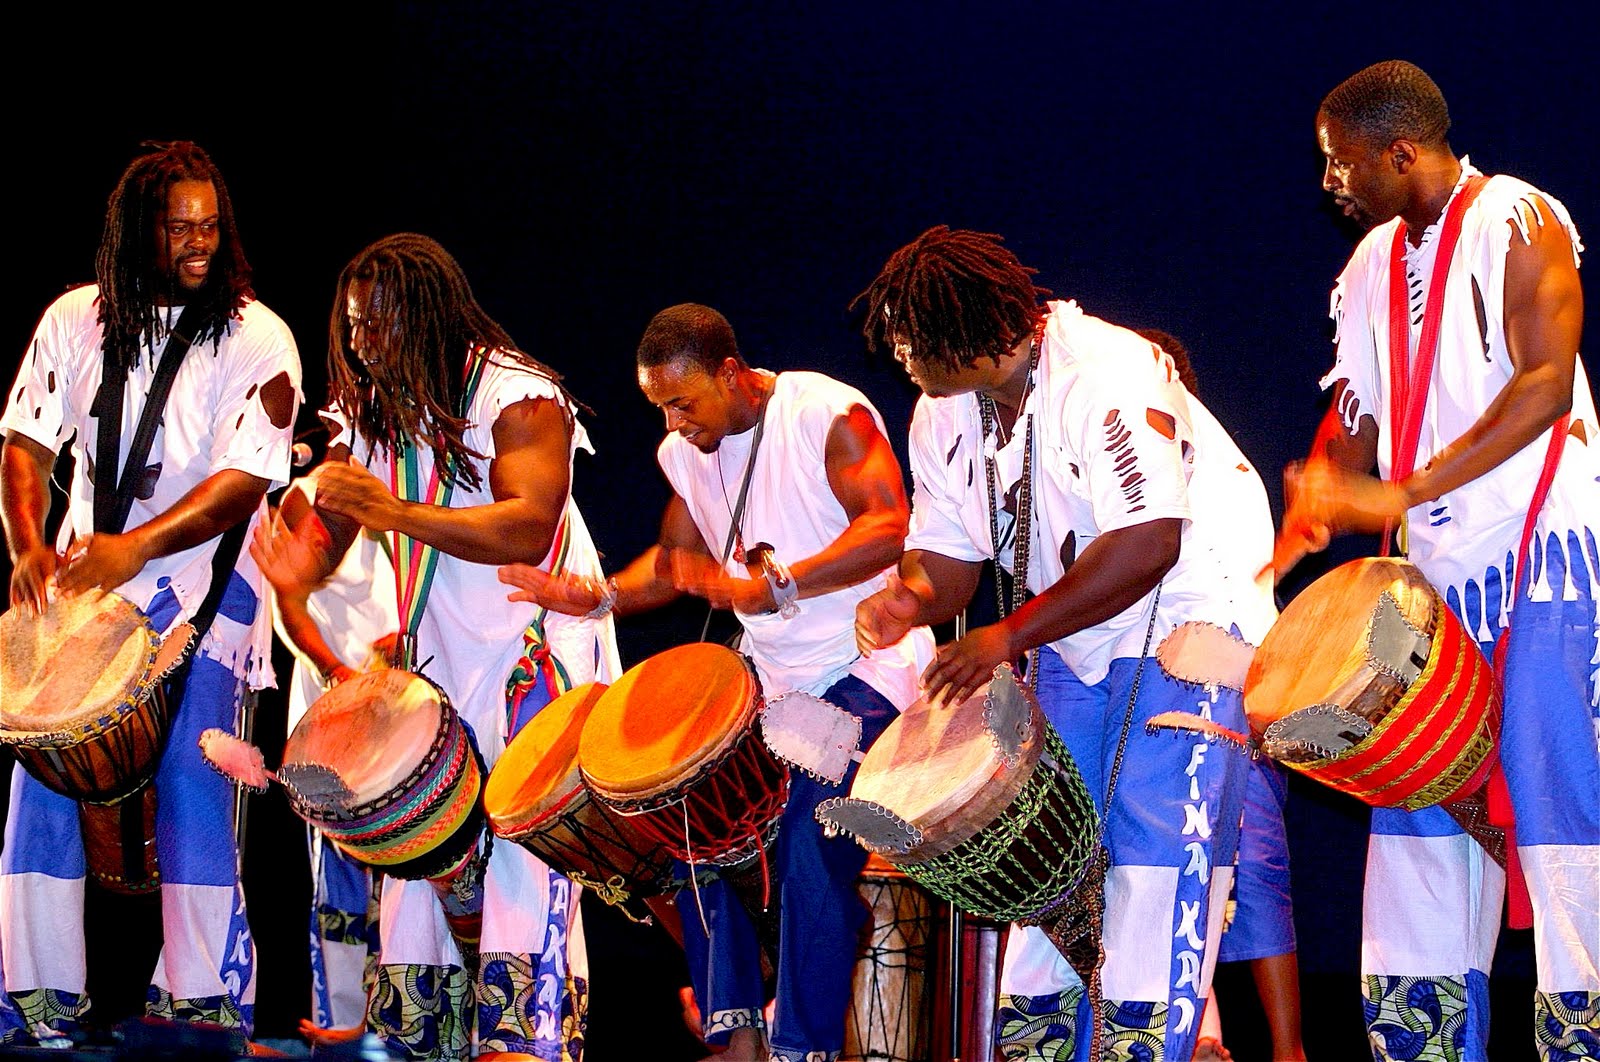 Современная африканская музыка. Музыкальная культура народа Африки. Музыканты африканцы. Африканский барабан. Африка музыкант.